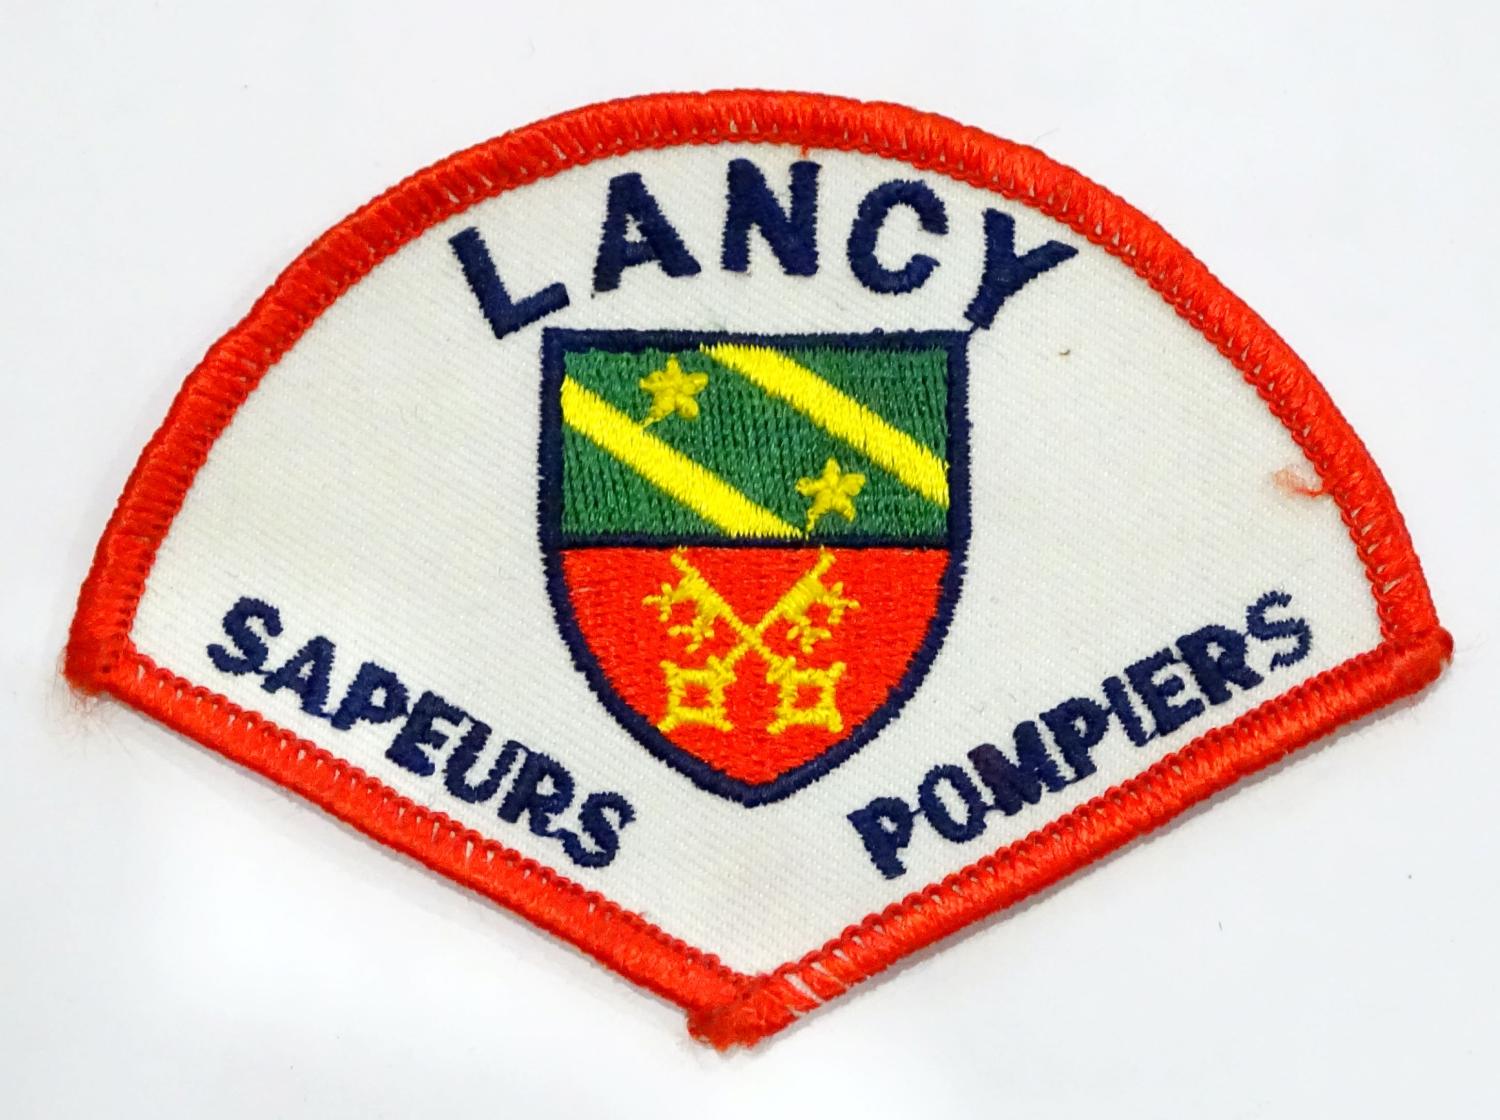 Ecusson Sapeurs pompiers Lancy